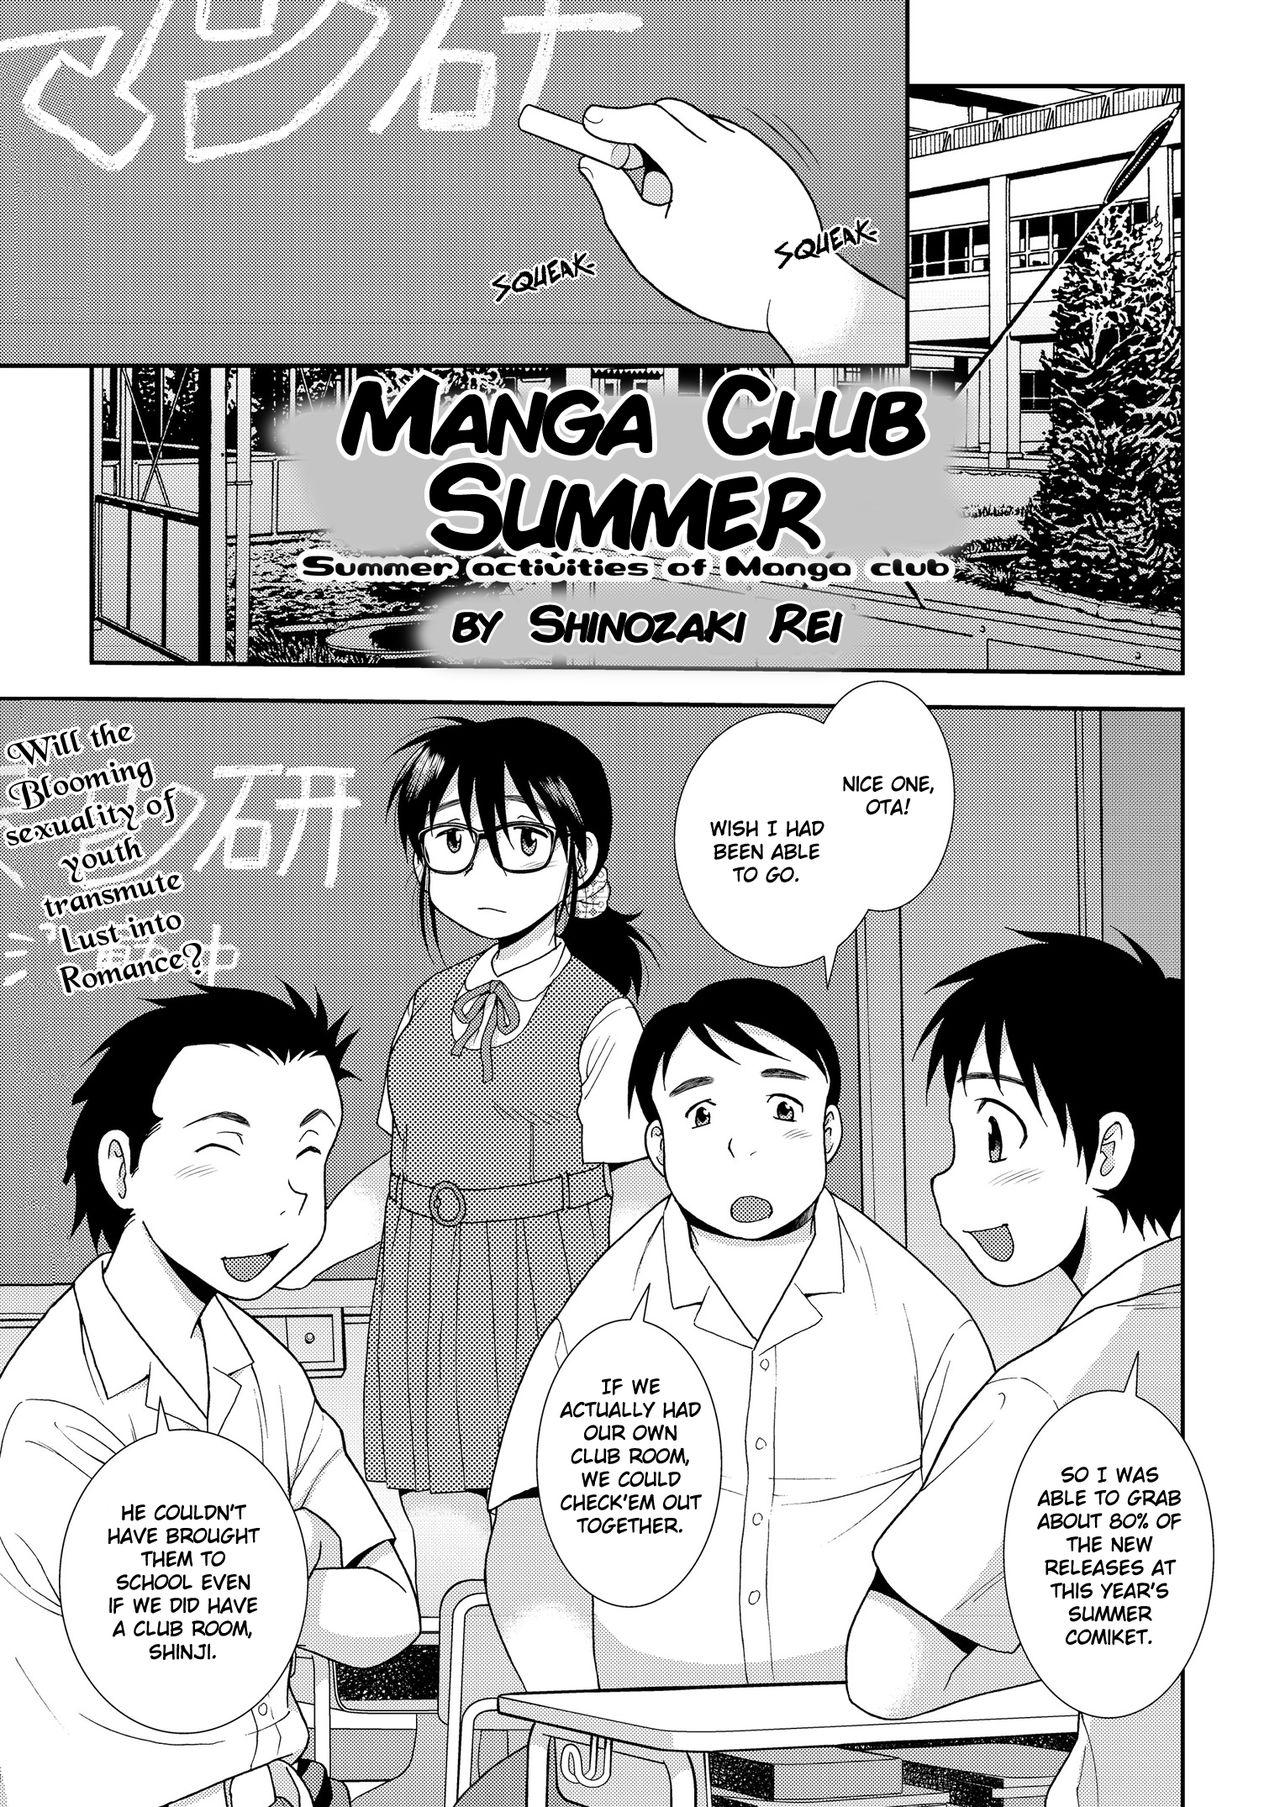 Pussylick Mangaken no Natsu | Manga Club Summer Egypt - Page 1